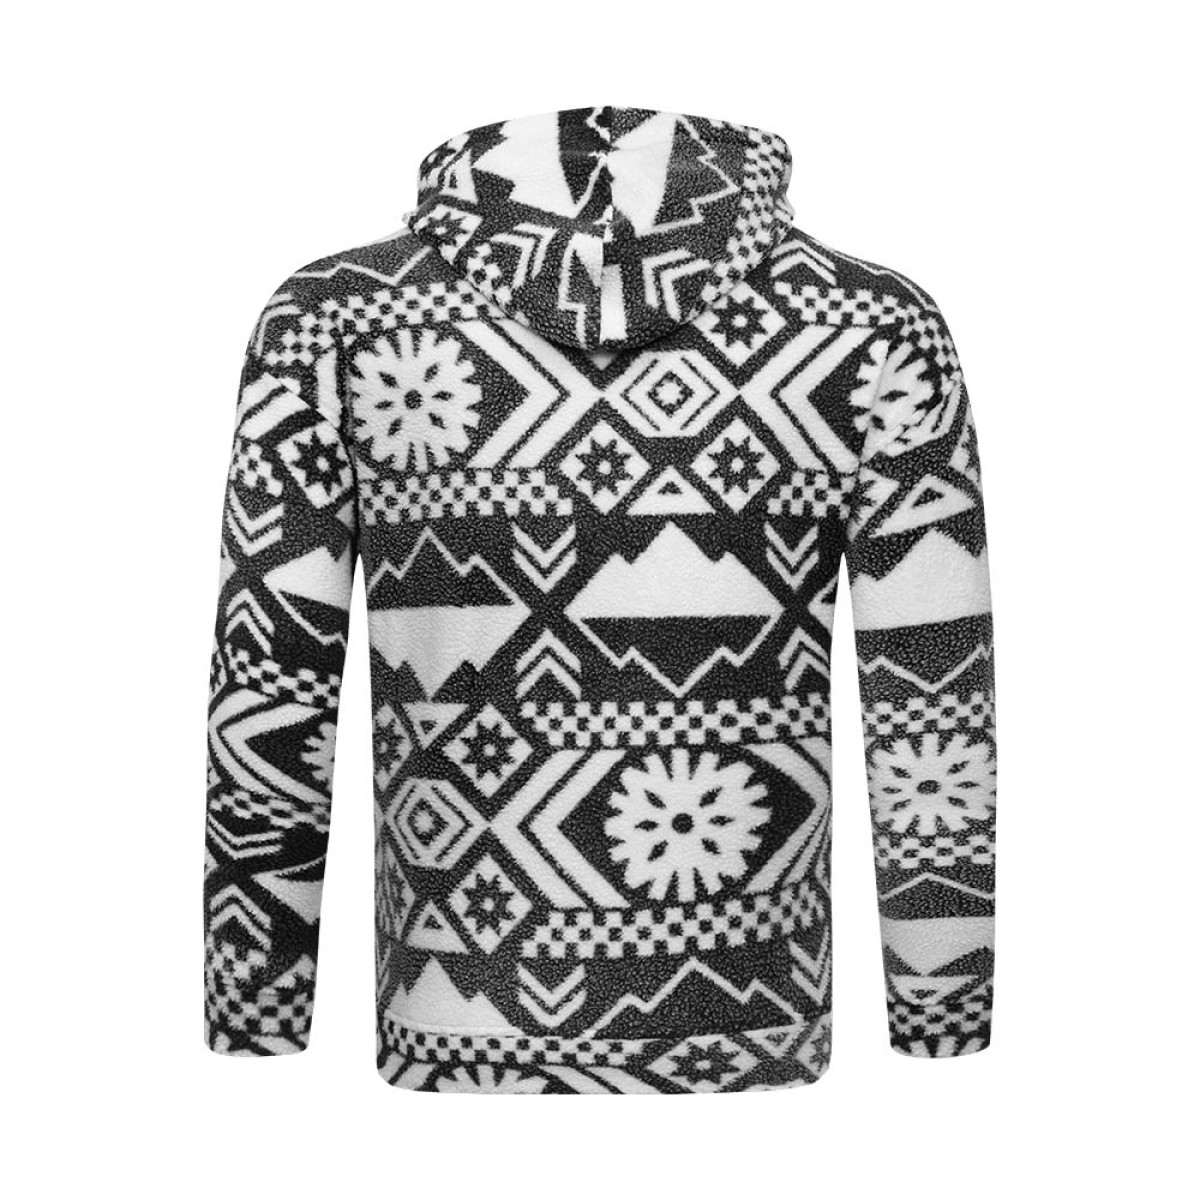 aero-sherpa-hoodie-kush32330-winter-wear